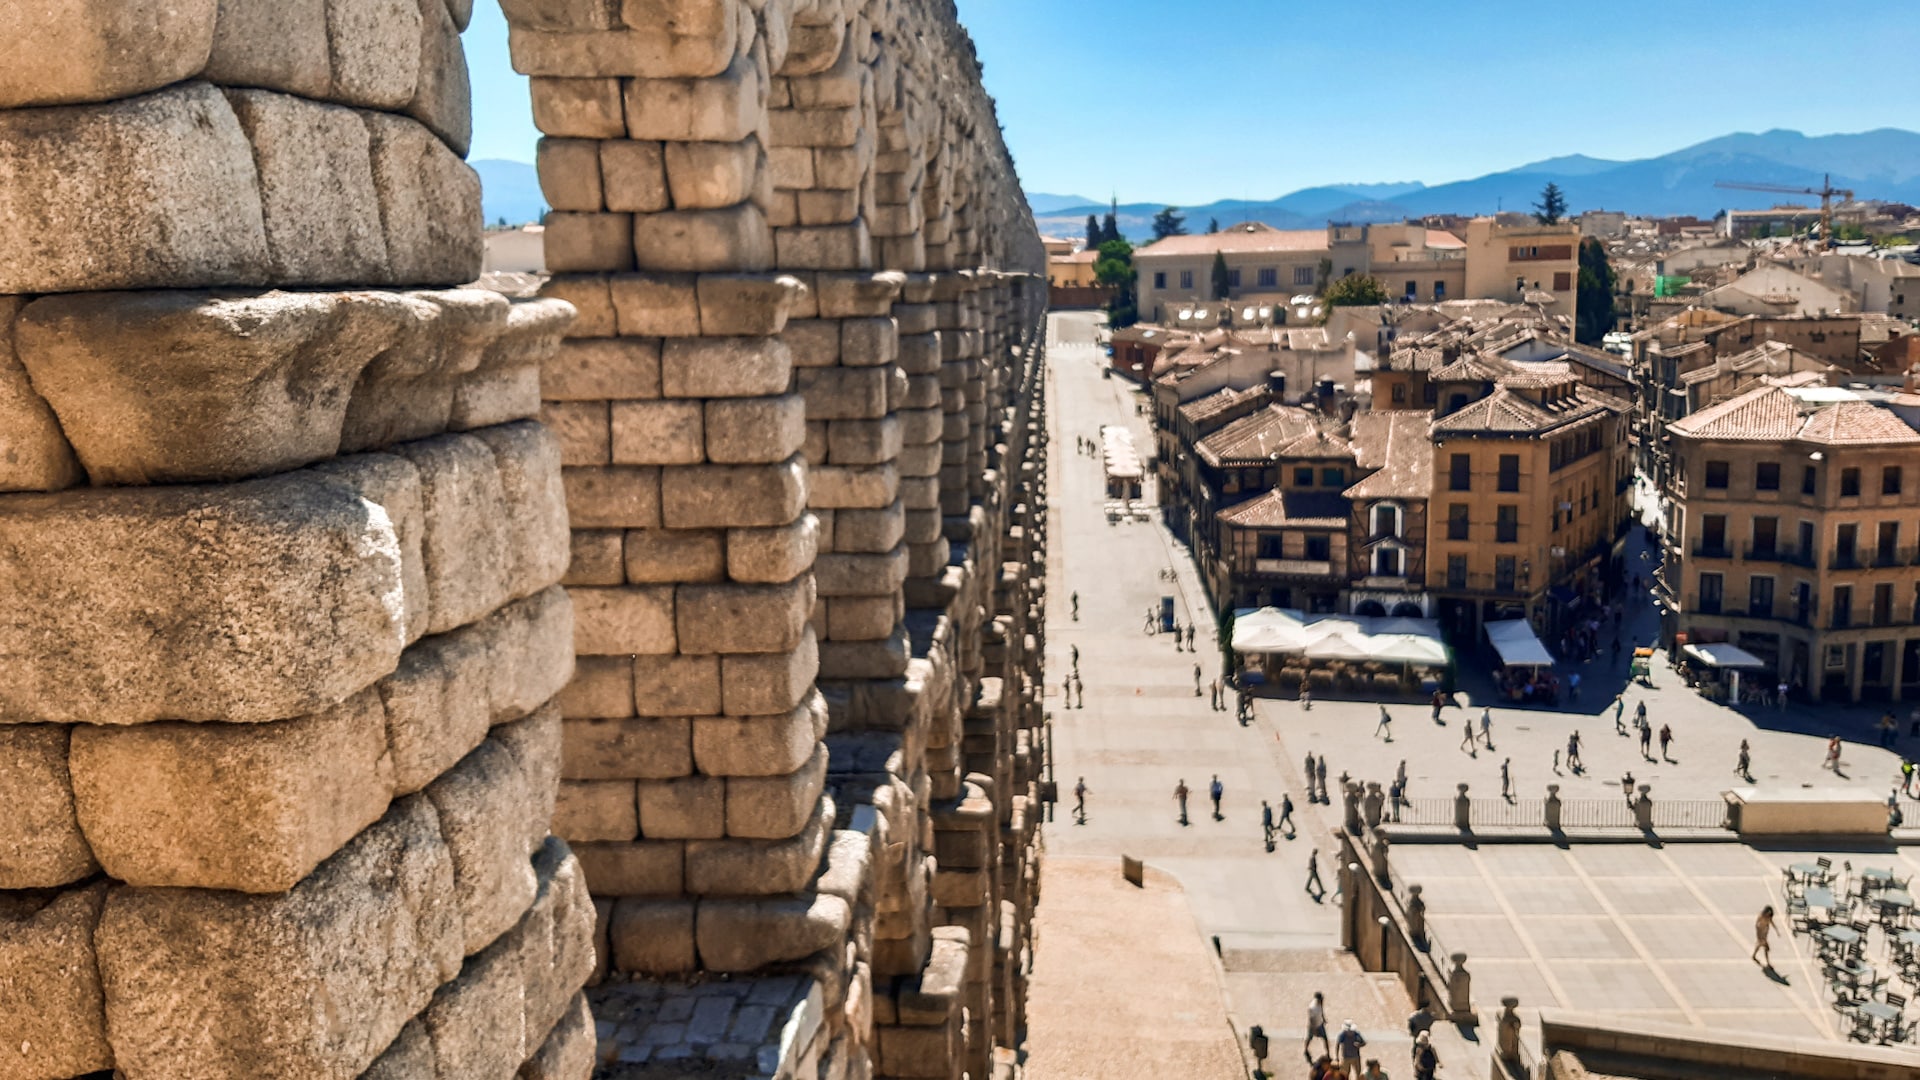 Il Centro Histórico è il cuore di Segovia, pieno di splendidi edifici antichi e ricco di storia.